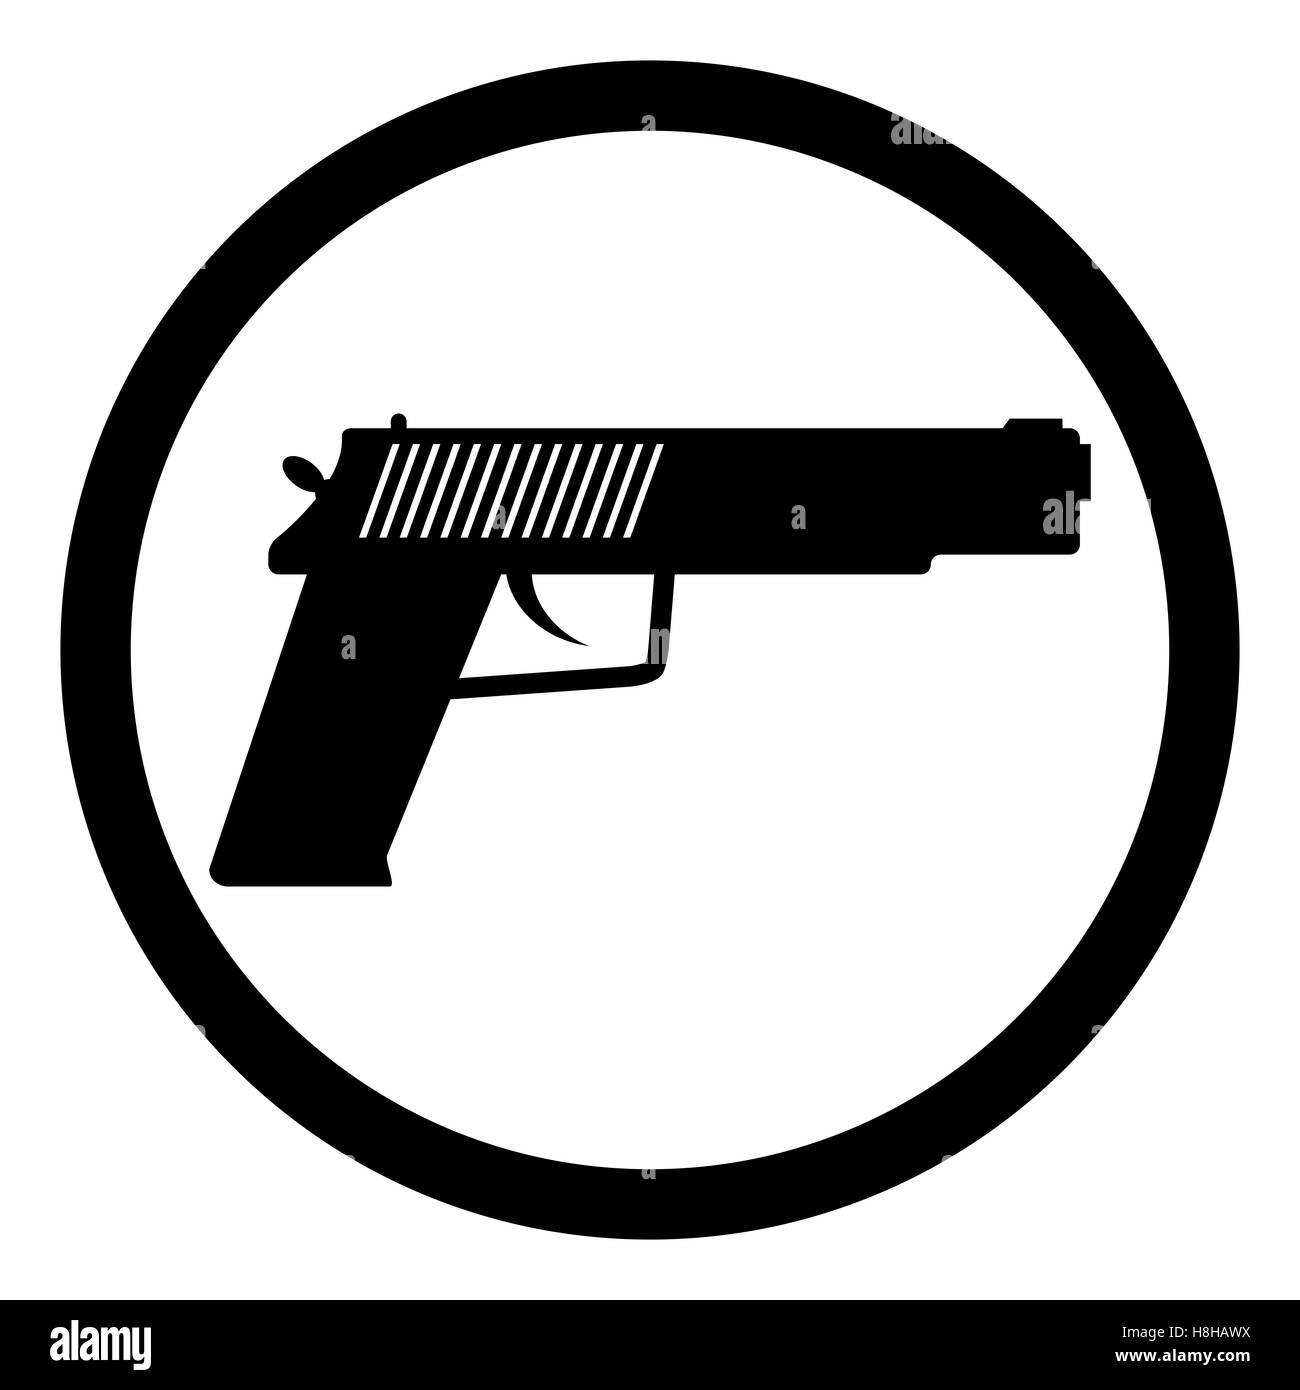 Icône pistolet noir. Silhouette pour des armes à feu ou de la police militaire, pistolet vector illustration Banque D'Images